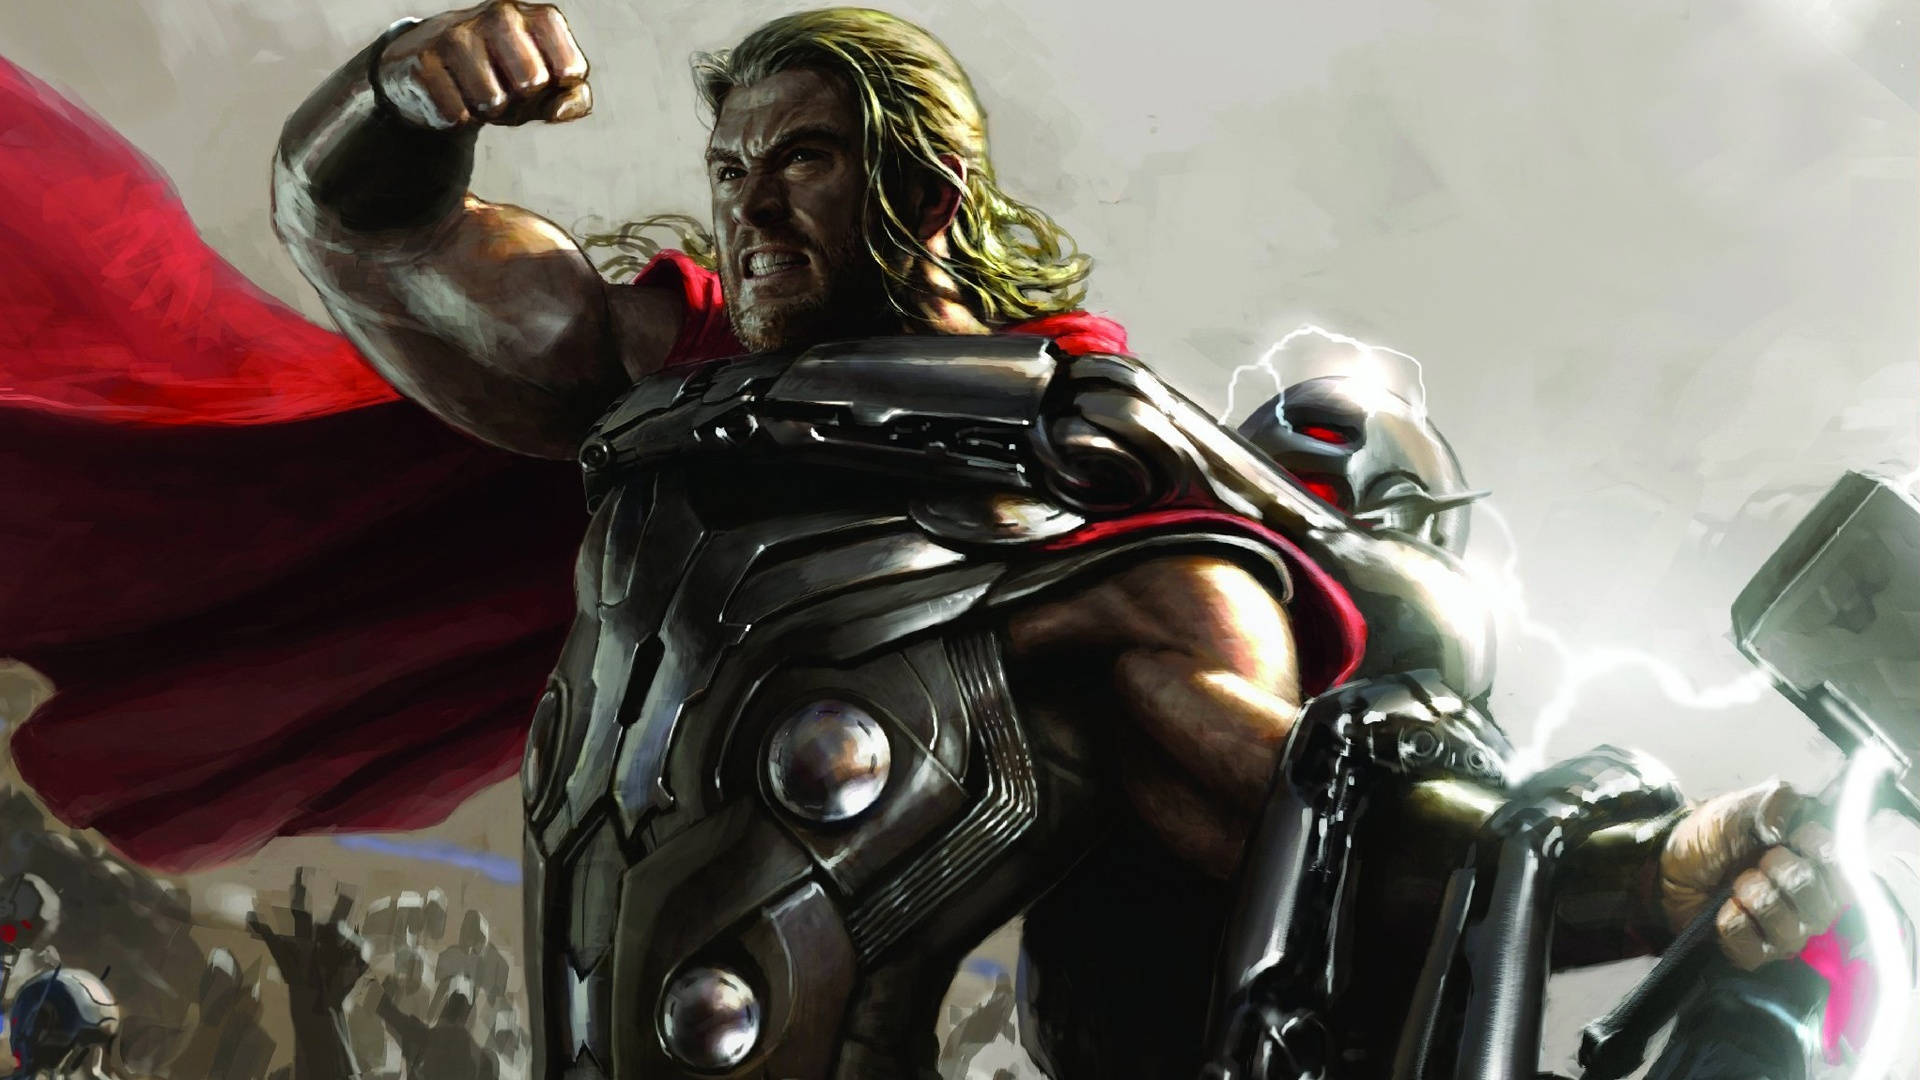 Chris Hemsworth As The Superhero Thor